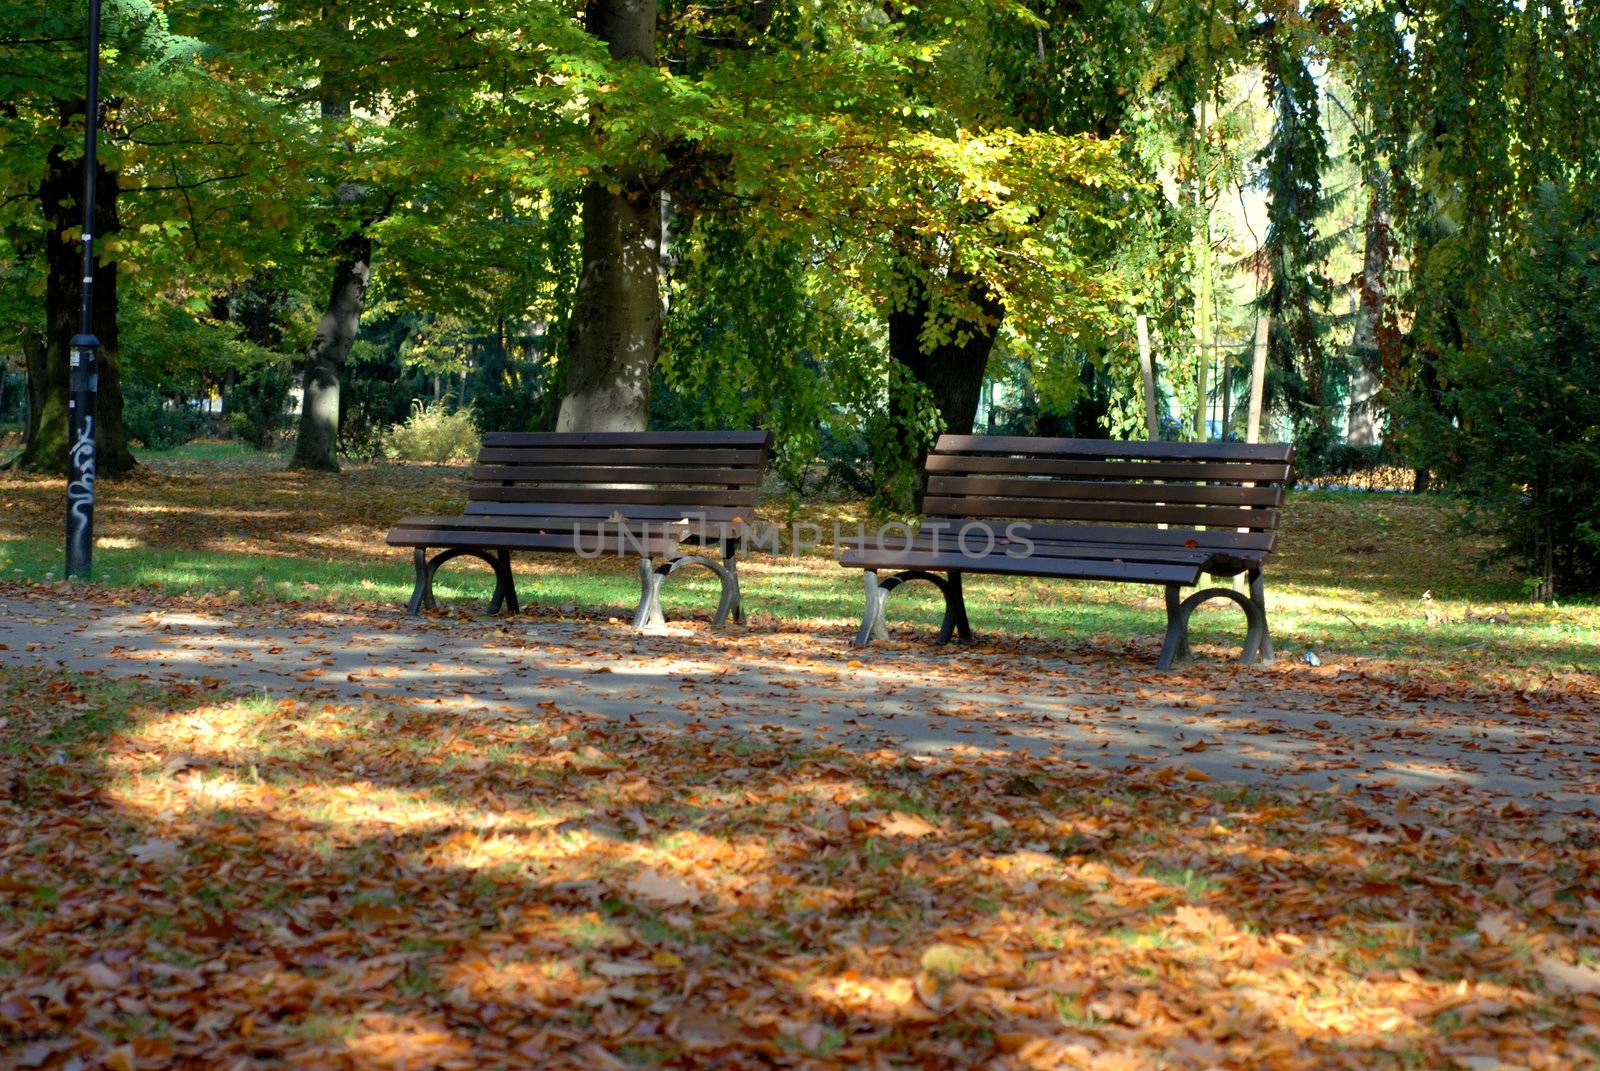 Benches in the park, Autumn season. by wojciechkozlowski